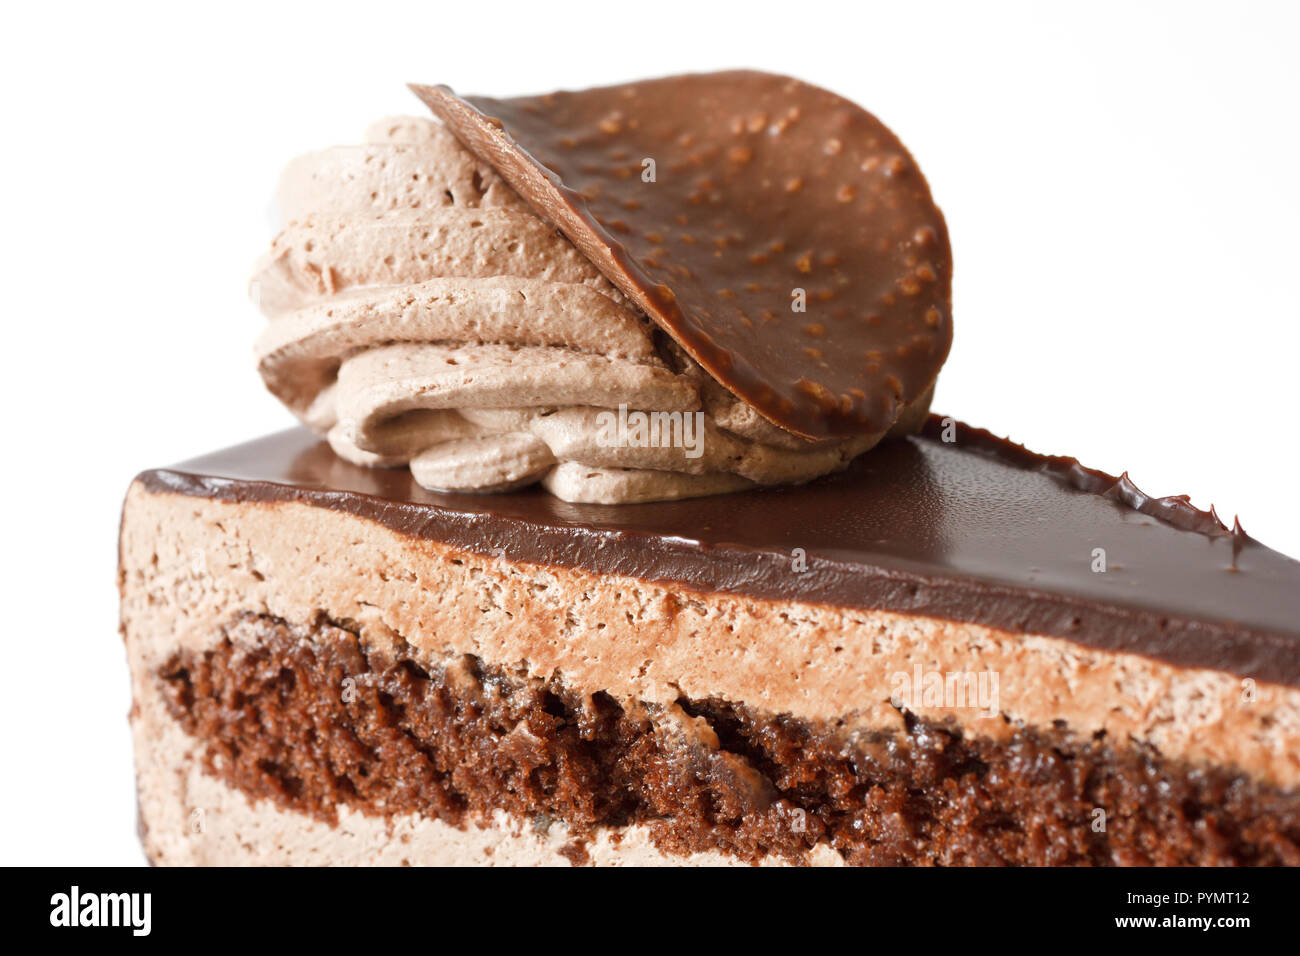 Layered chocolate cake Stock Photo